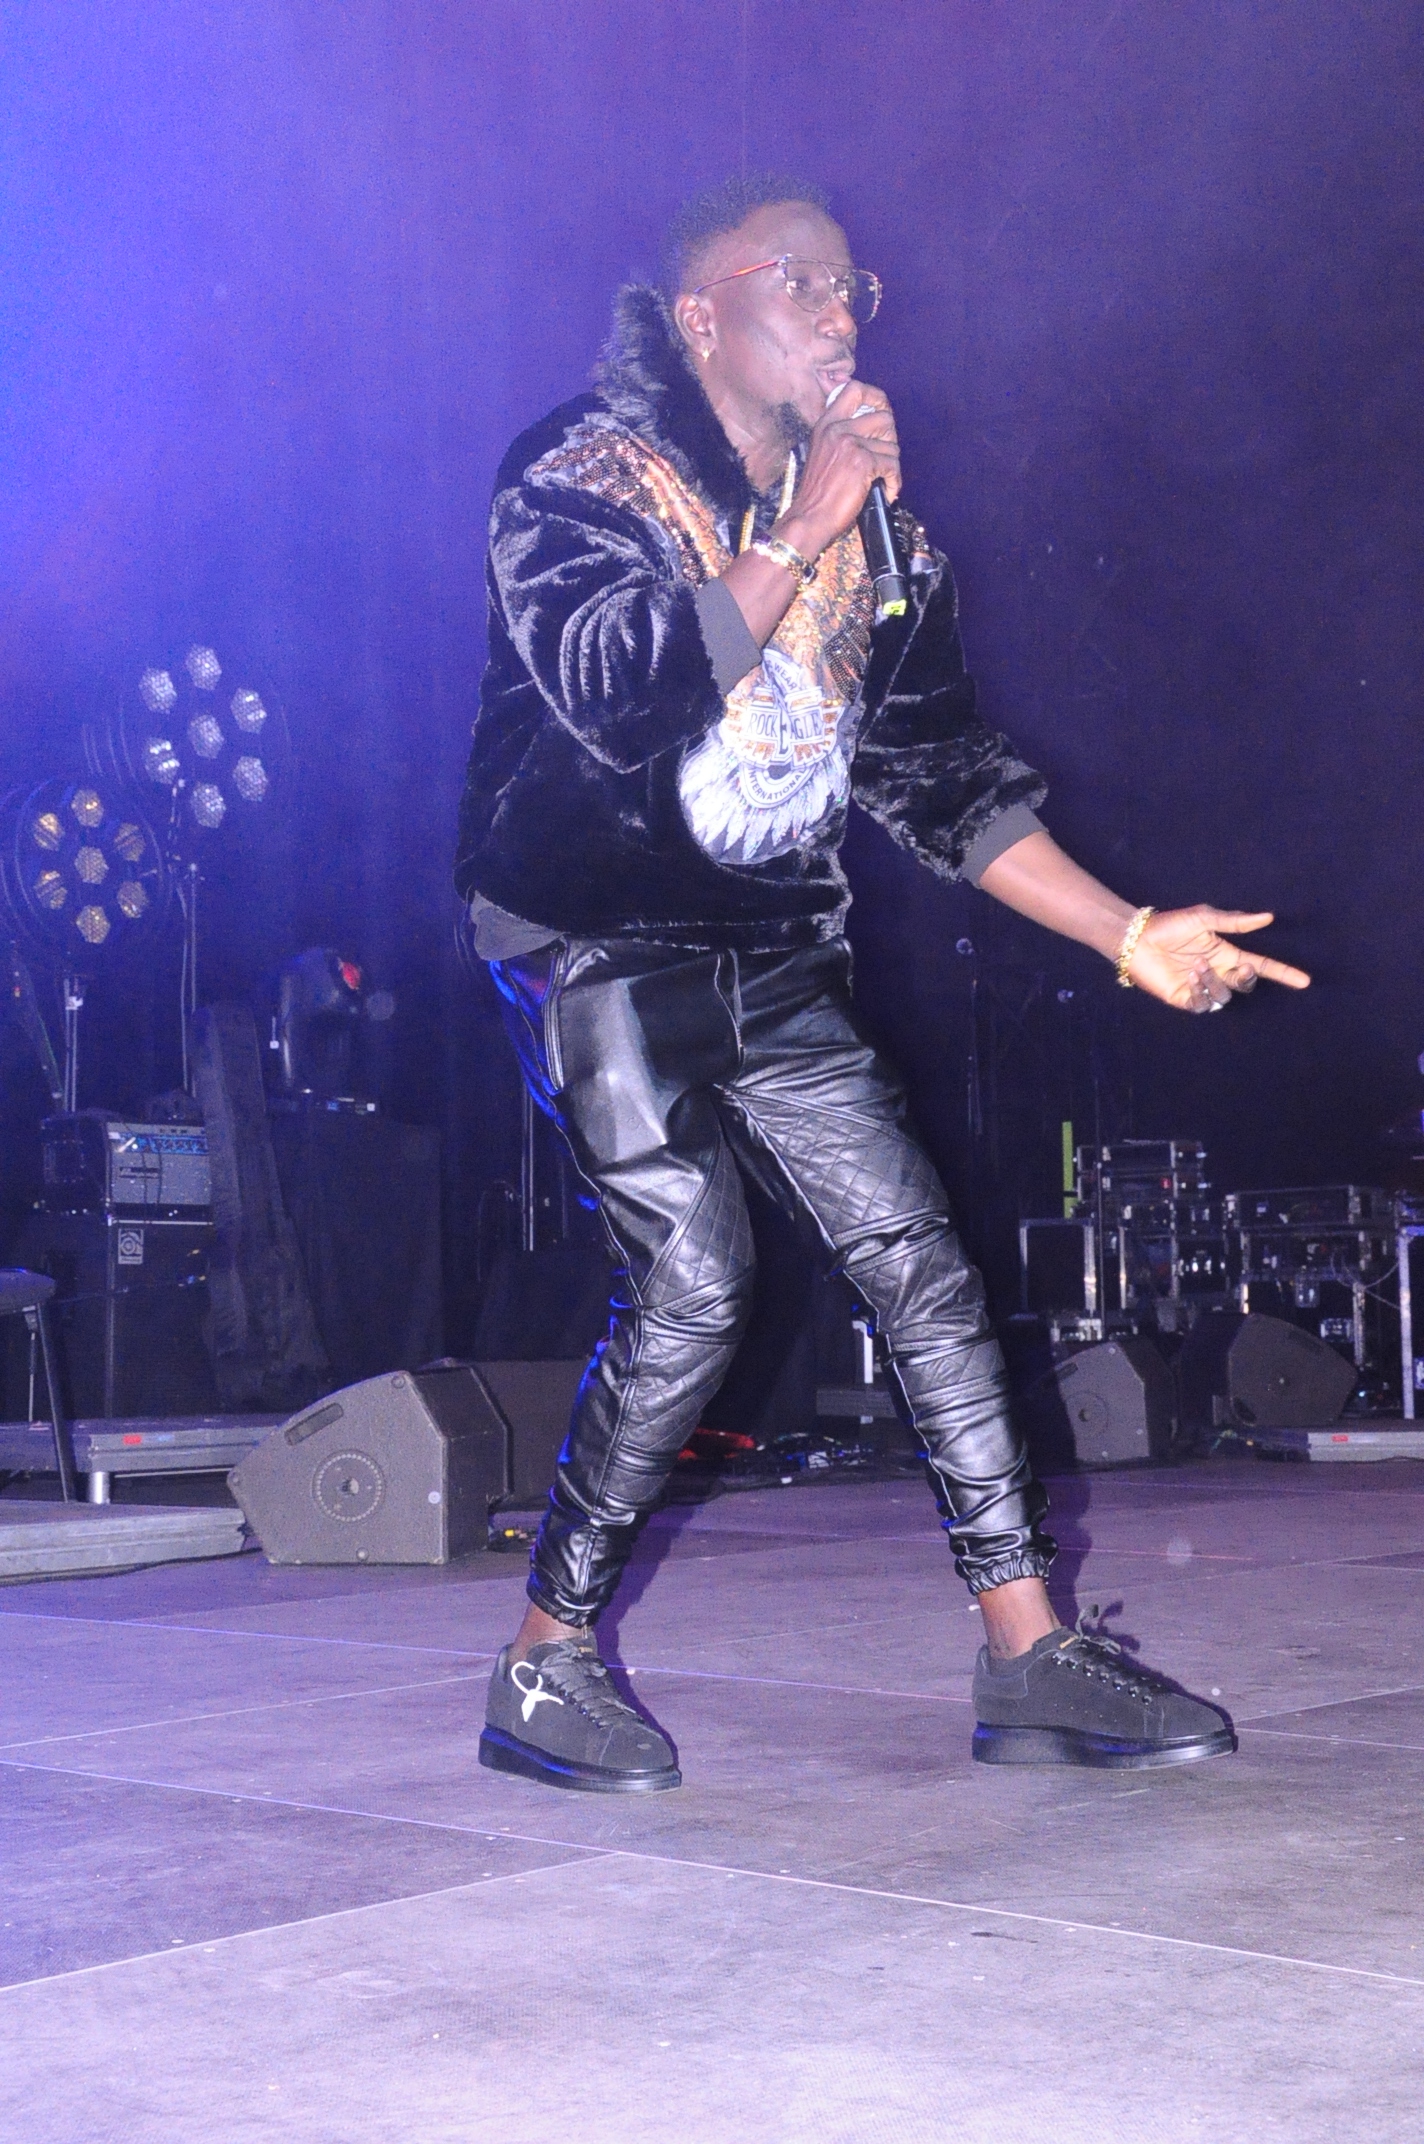 EXCLUSIF: Ousmane Dia séduit le public de Waly Seck au Domes de Paris avec son single "SAMA LOVE"